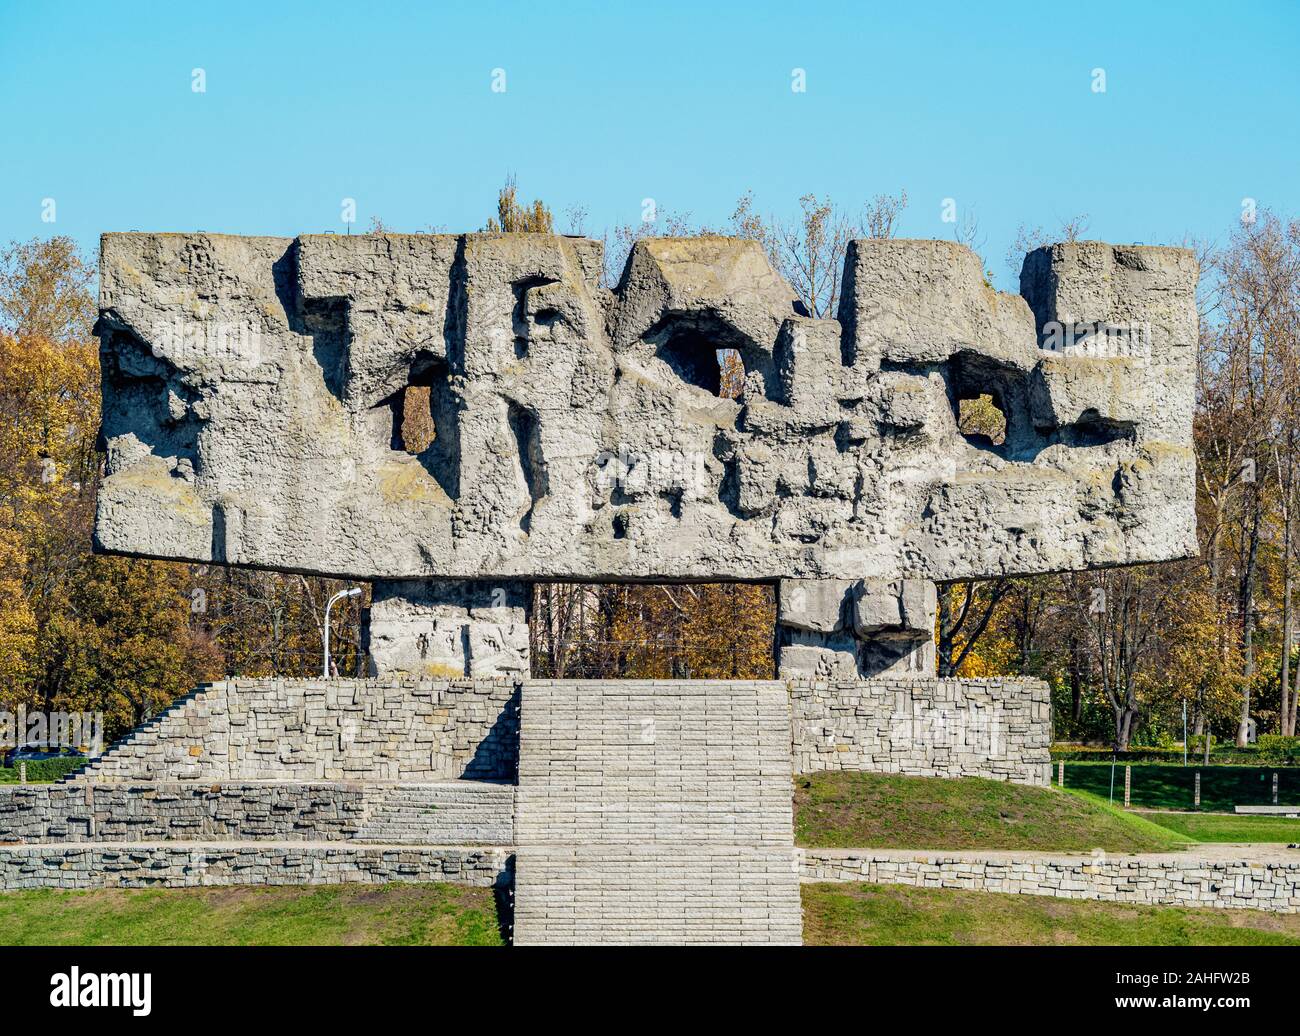 Monument à Majdanek, allemand nazi de concentration et d'extermination camp, voïvodie de Lublin, Lublin, Pologne Banque D'Images